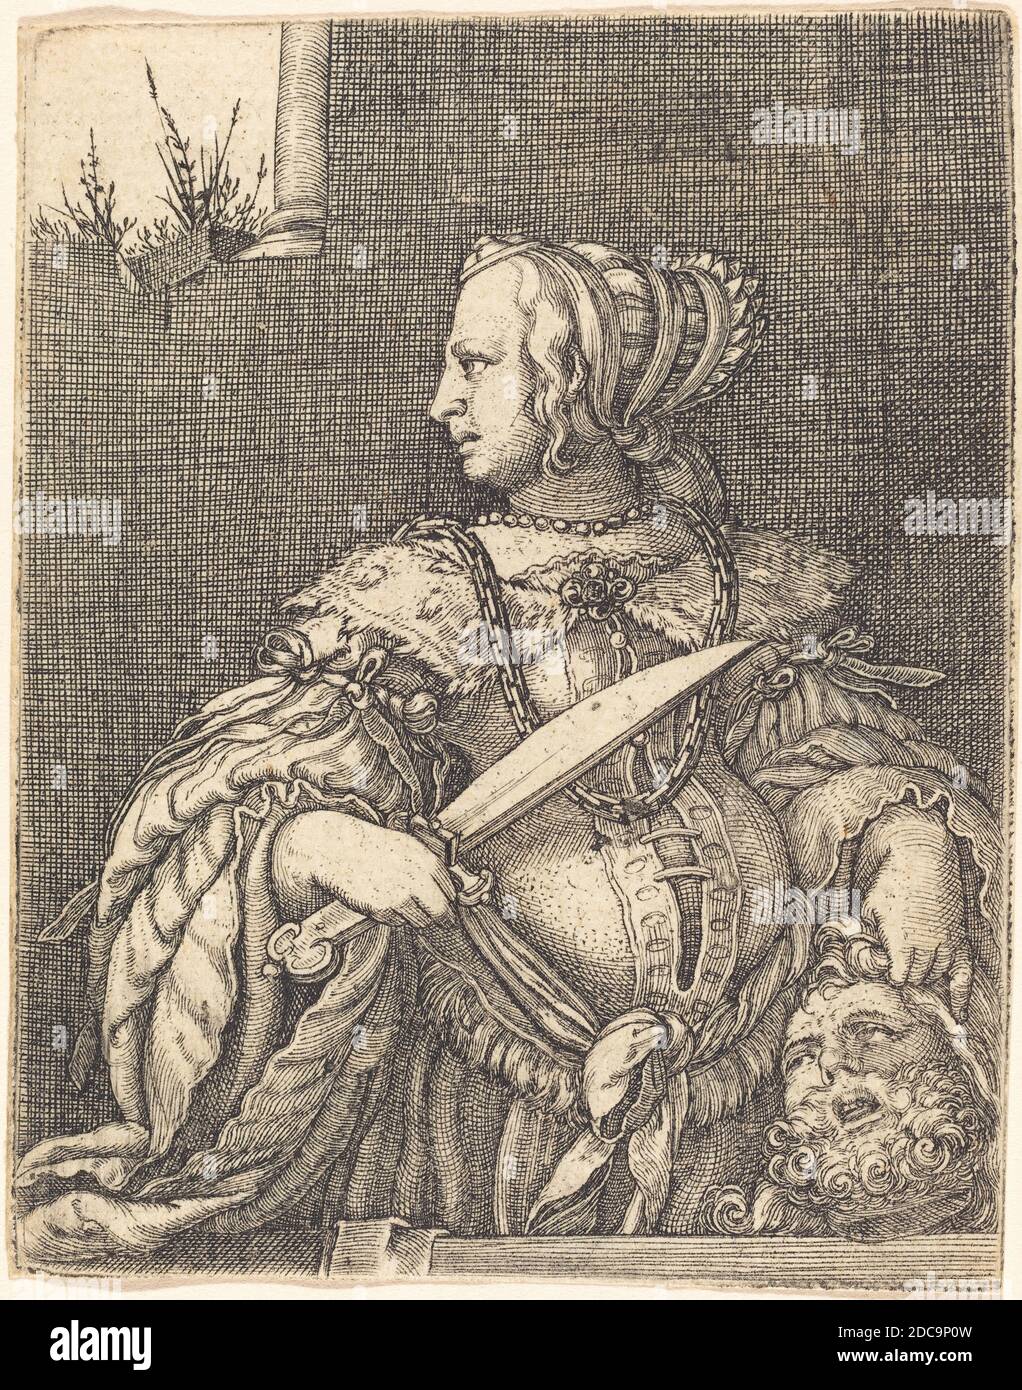 Barthel Beham, (artiste), allemand, 1502 - 1540, Judith avec la tête de Holofernes, 1525/1527, gravure Banque D'Images